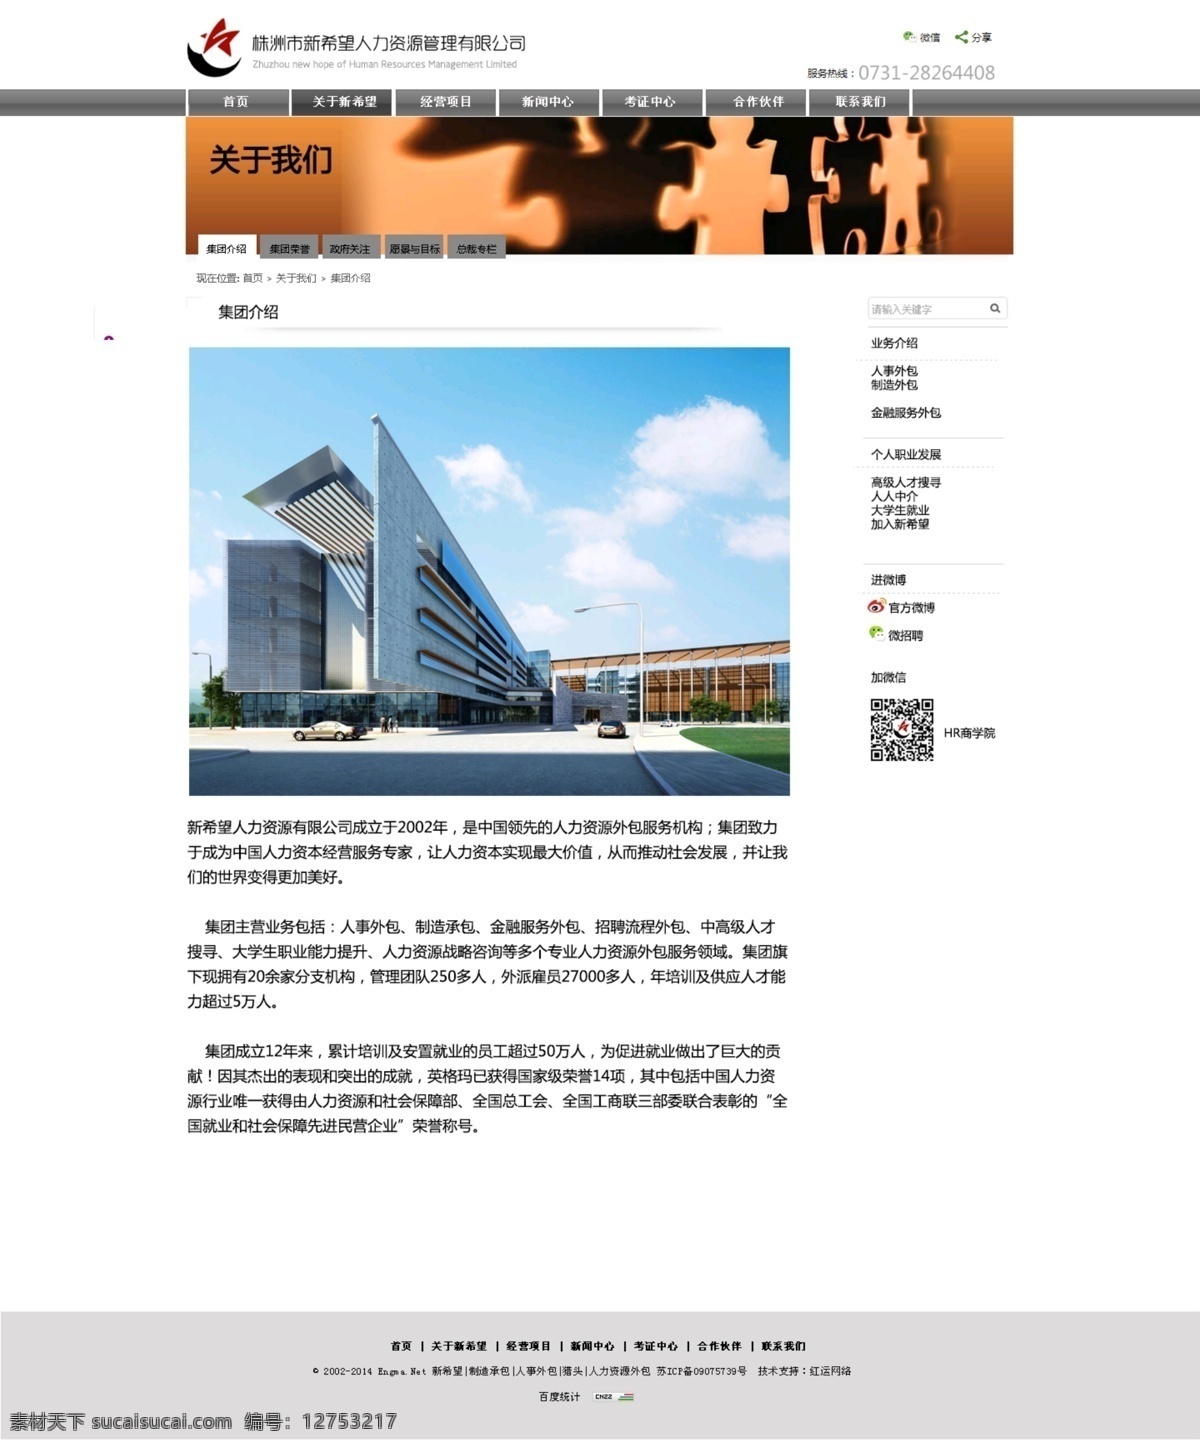 内页 内页设计 网页设计 网站内页 网站设计 新闻中心 中文模板 web 界面设计 网页素材 其他网页素材